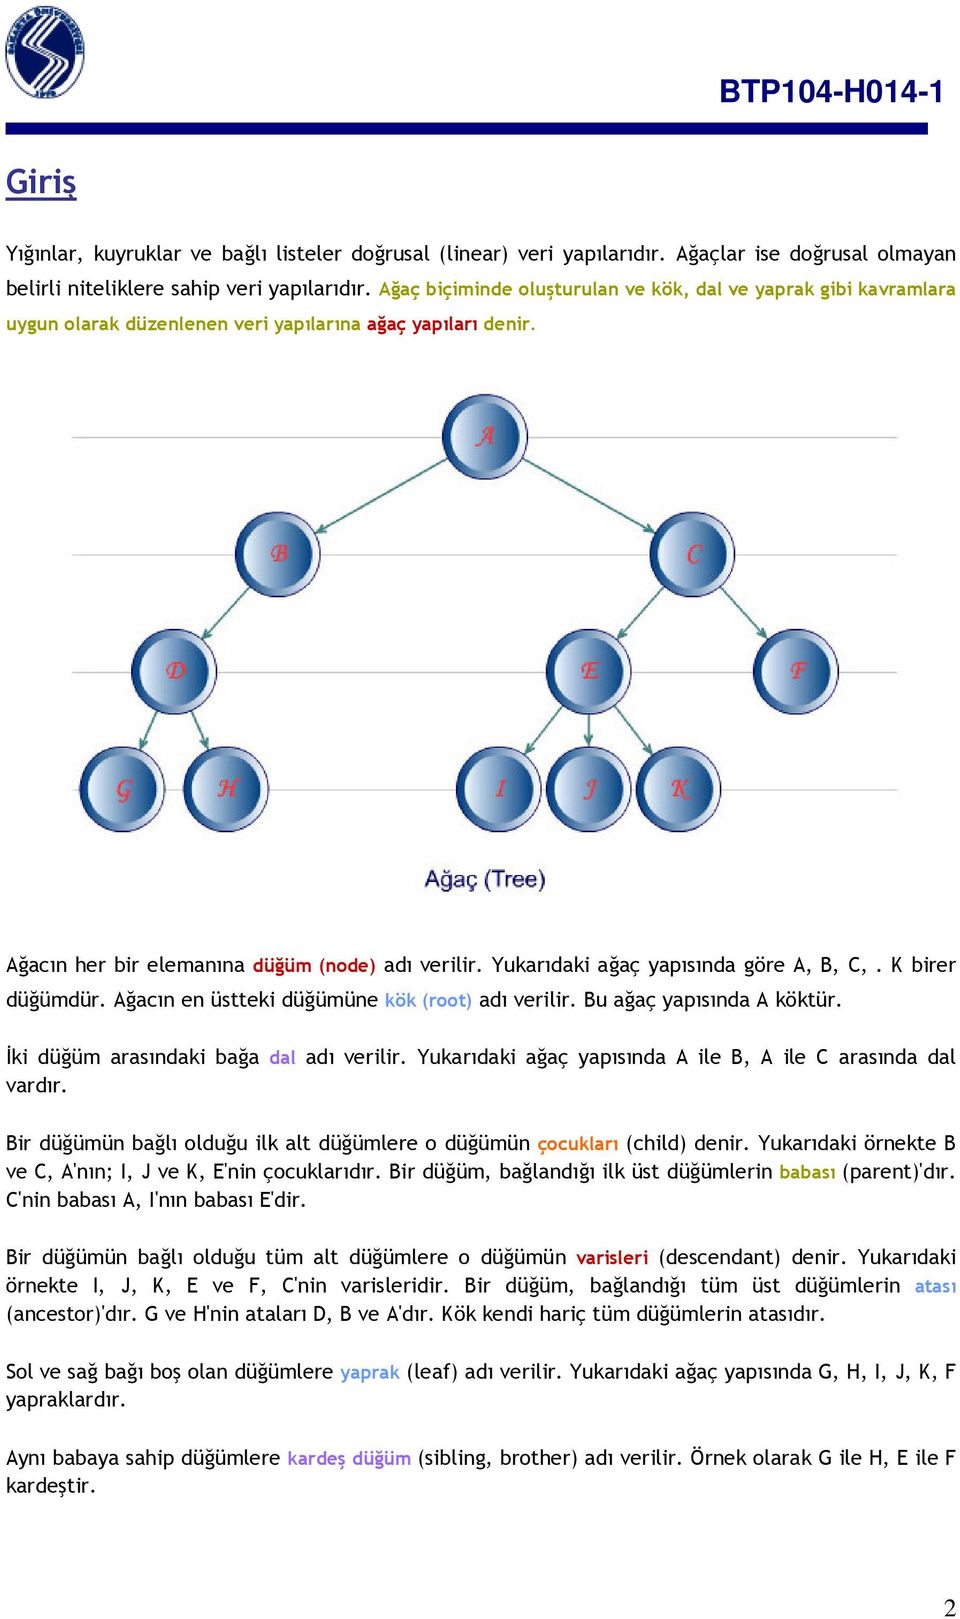 Yukarıdaki ağaç yapısında göre A, B, C,. K birer düğümdür. Ağacın en üstteki düğümüne kök (root) adı verilir. Bu ağaç yapısında A köktür. İki düğüm arasındaki bağa dal adı verilir.